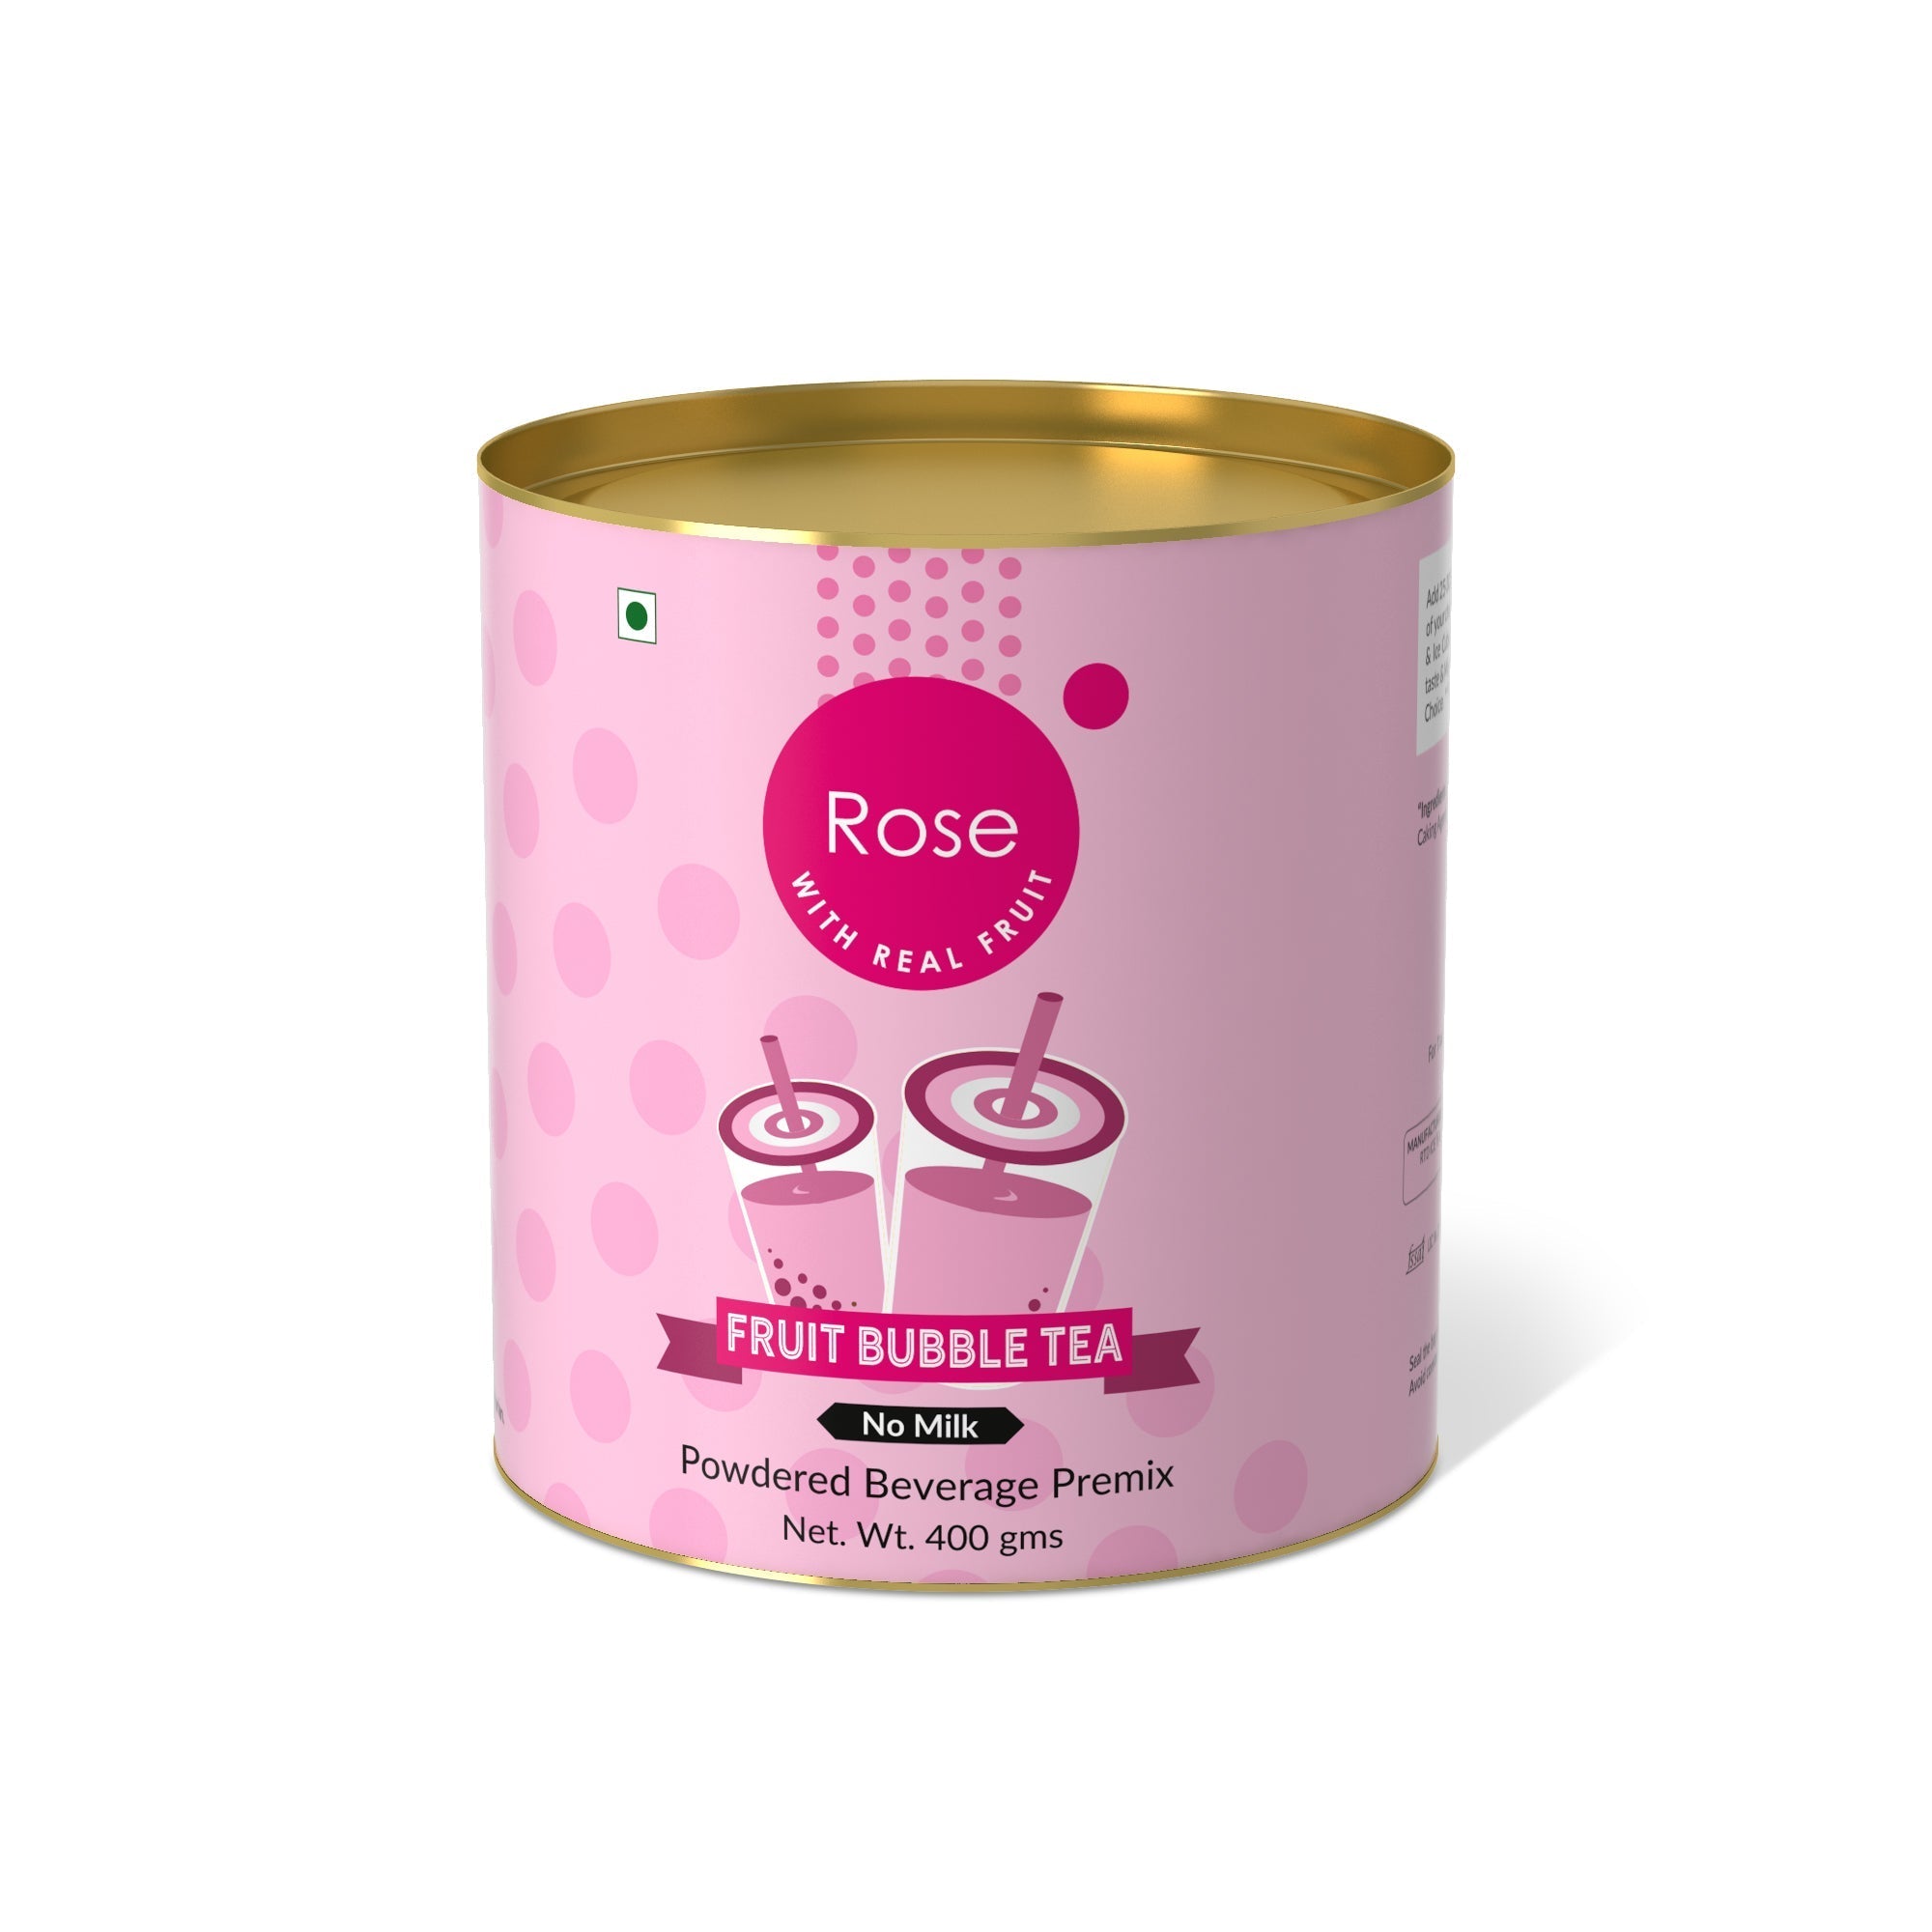 Rose Flower Fruit Bubble Tea Premix - 400 gms